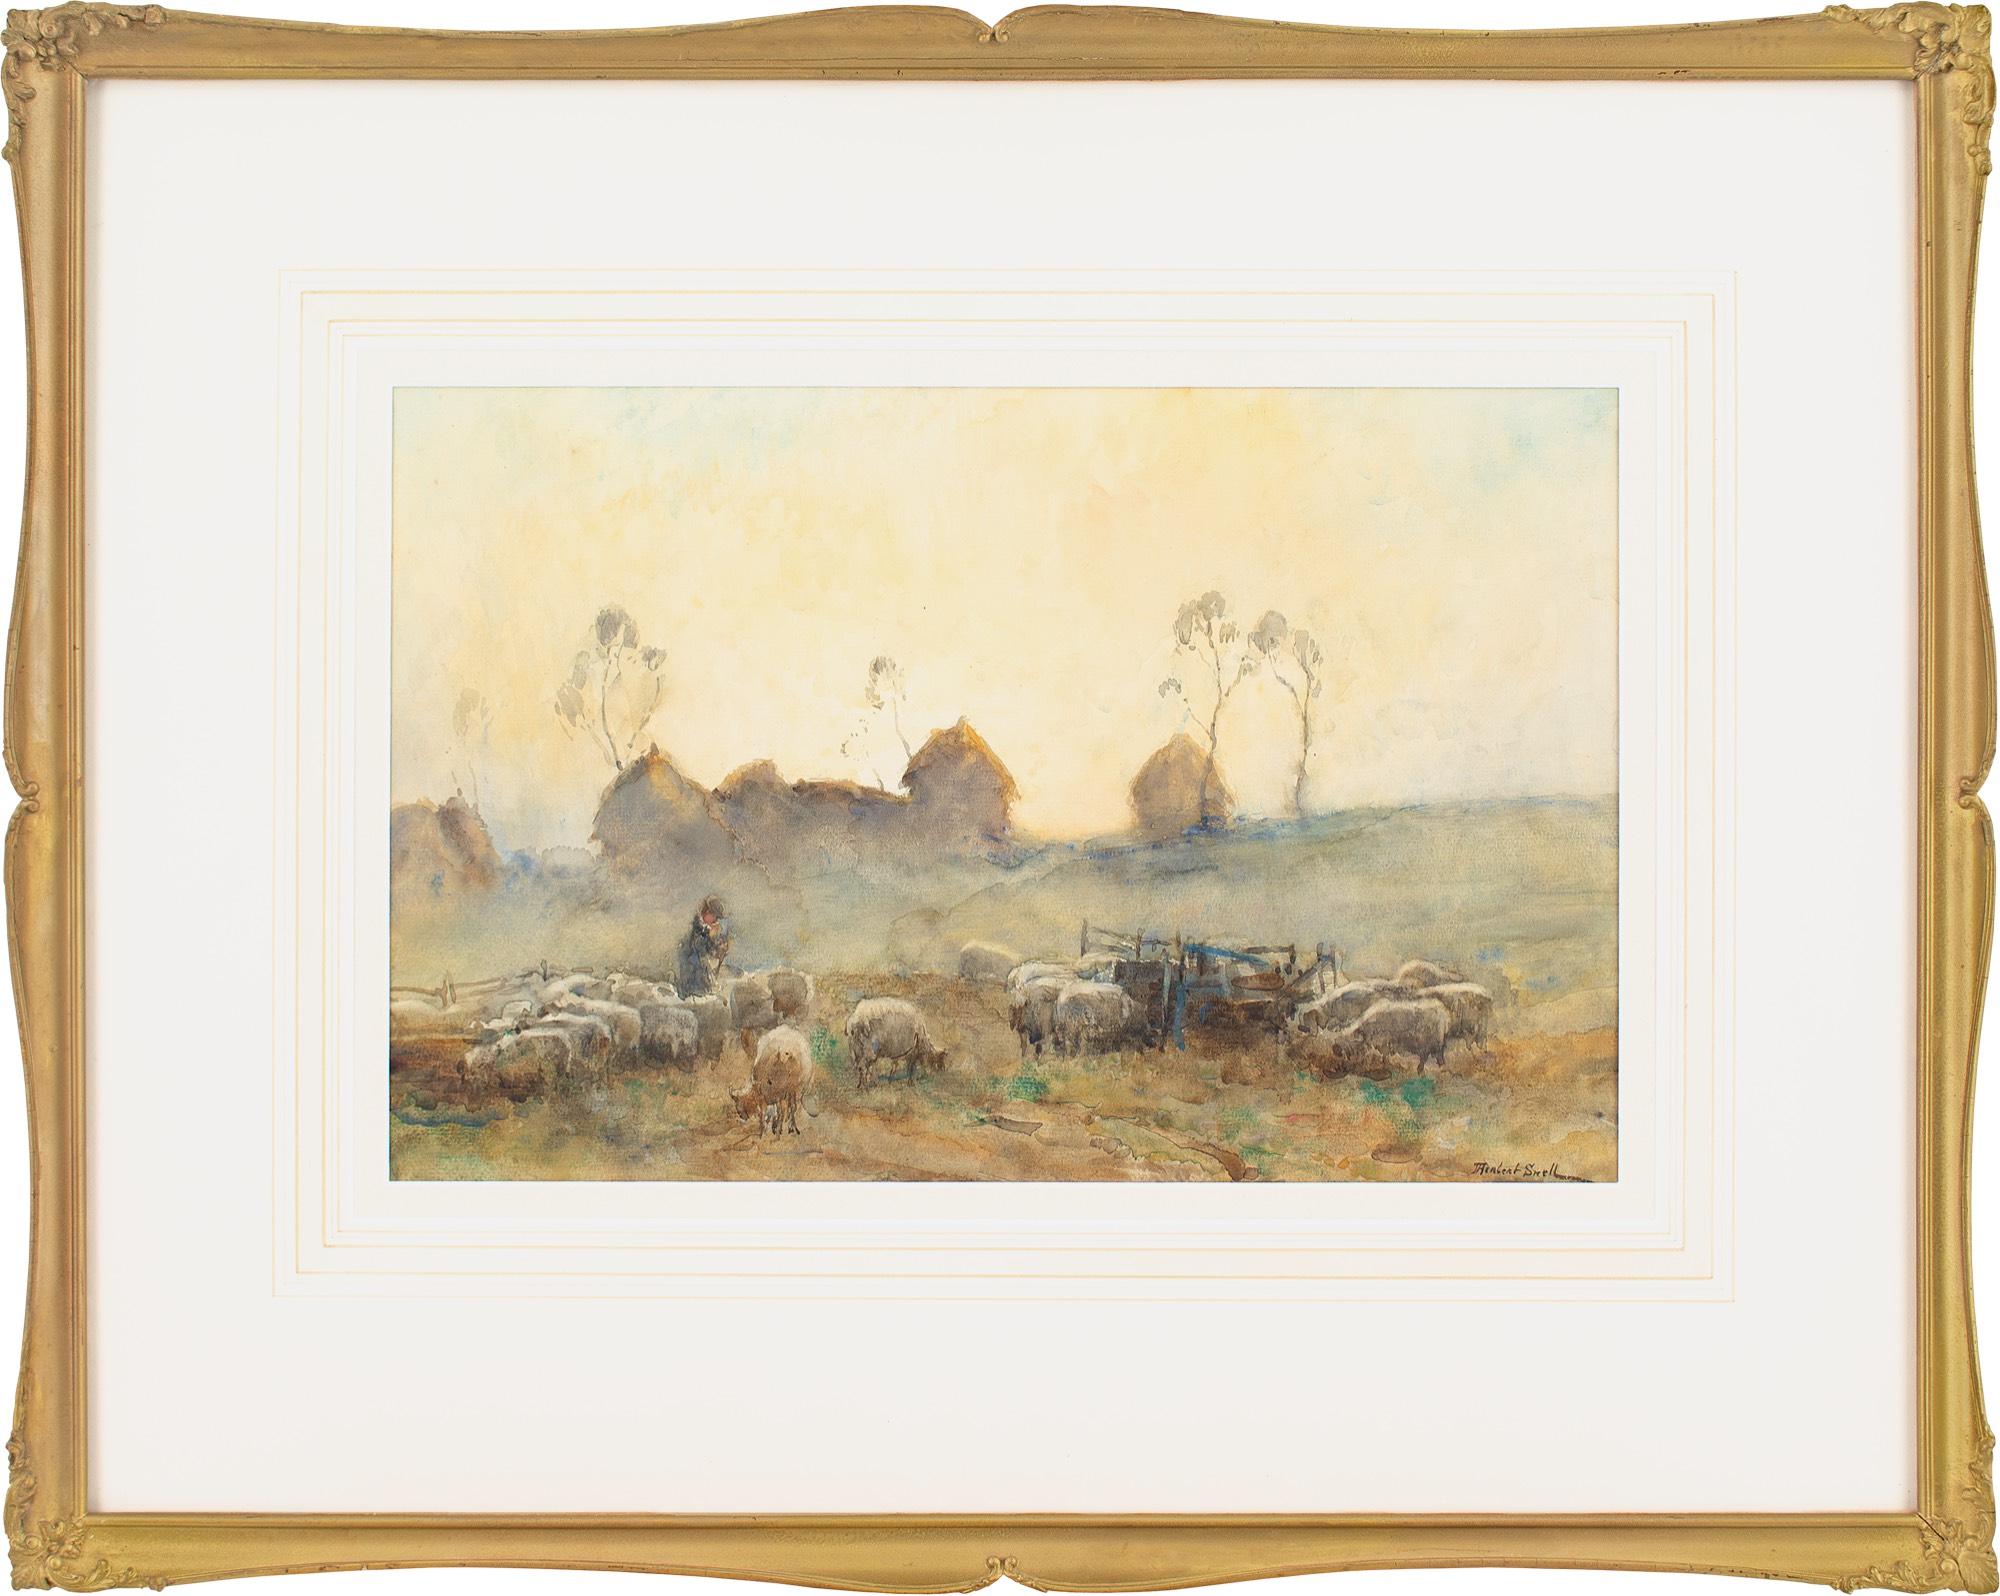 Dieses schöne Aquarell des britischen Künstlers James Herbert Snell (1861-1935) aus dem späten 19. Jahrhundert zeigt einen Hirten, der abends Schafe hütet.

Snell war ein interessanter Maler, denn seine Werke fallen in eine Übergangszeit der